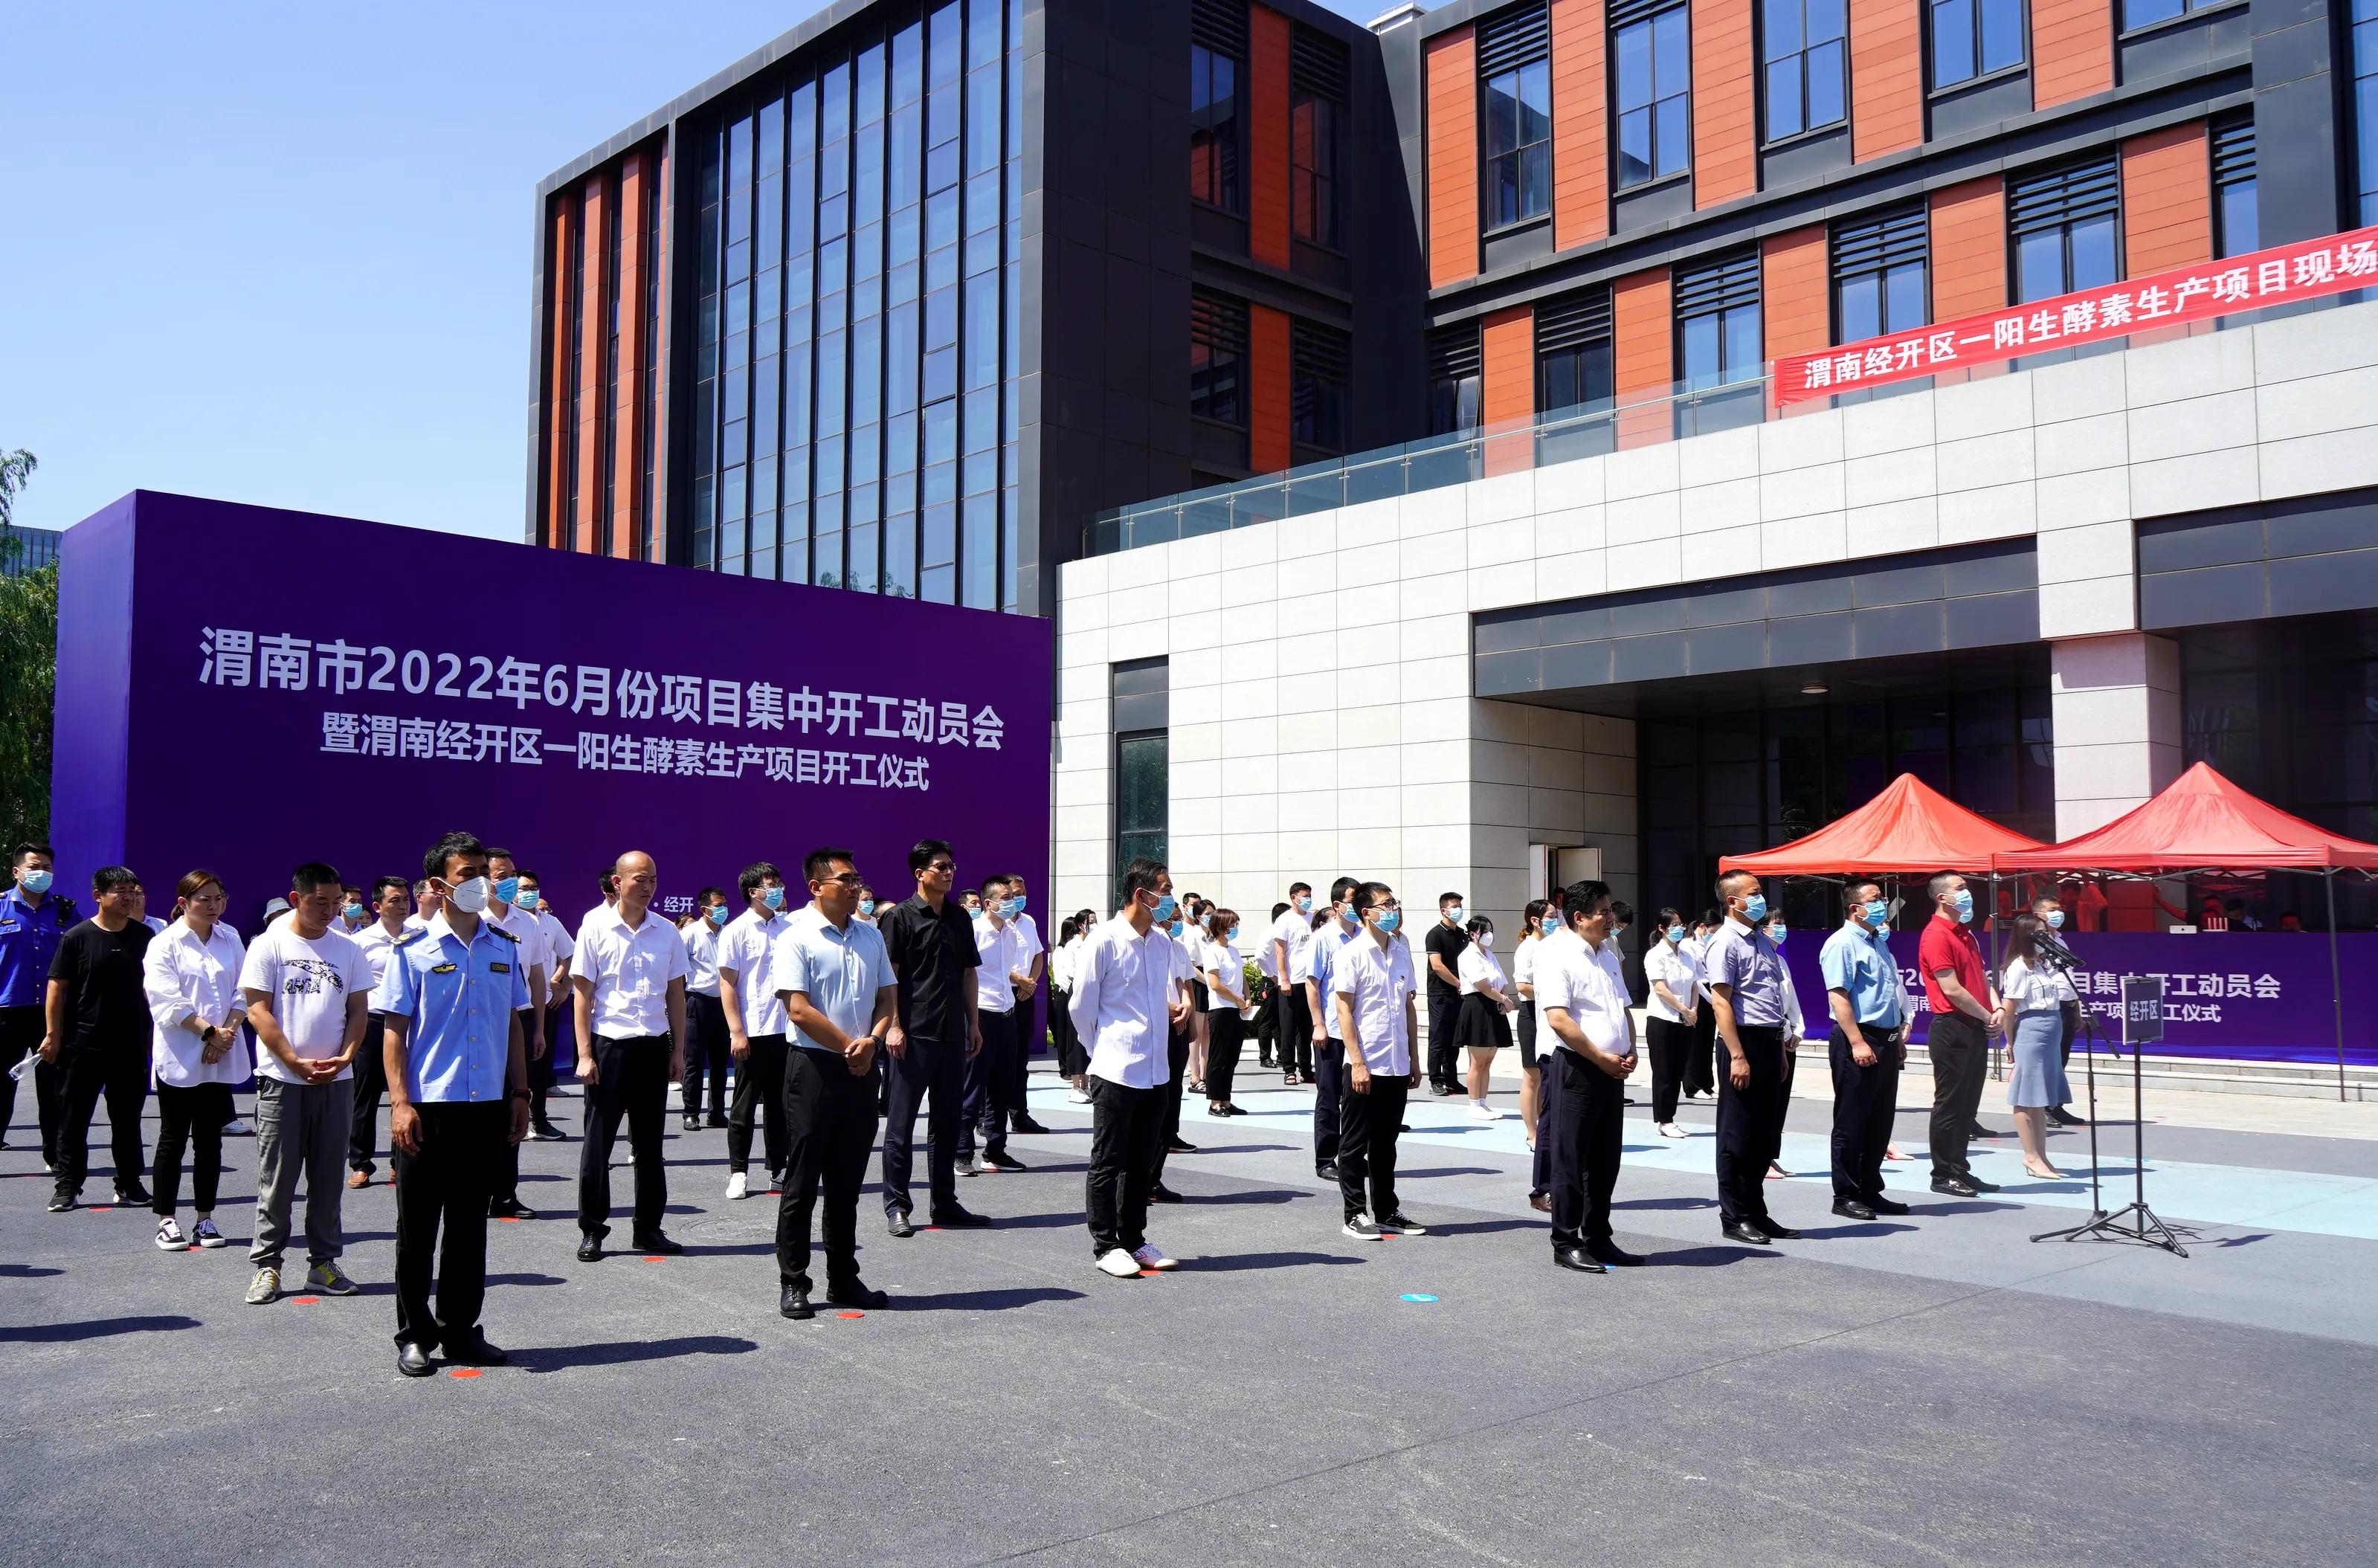 渭南经开区举行2022年第6次项目集中开工动员会